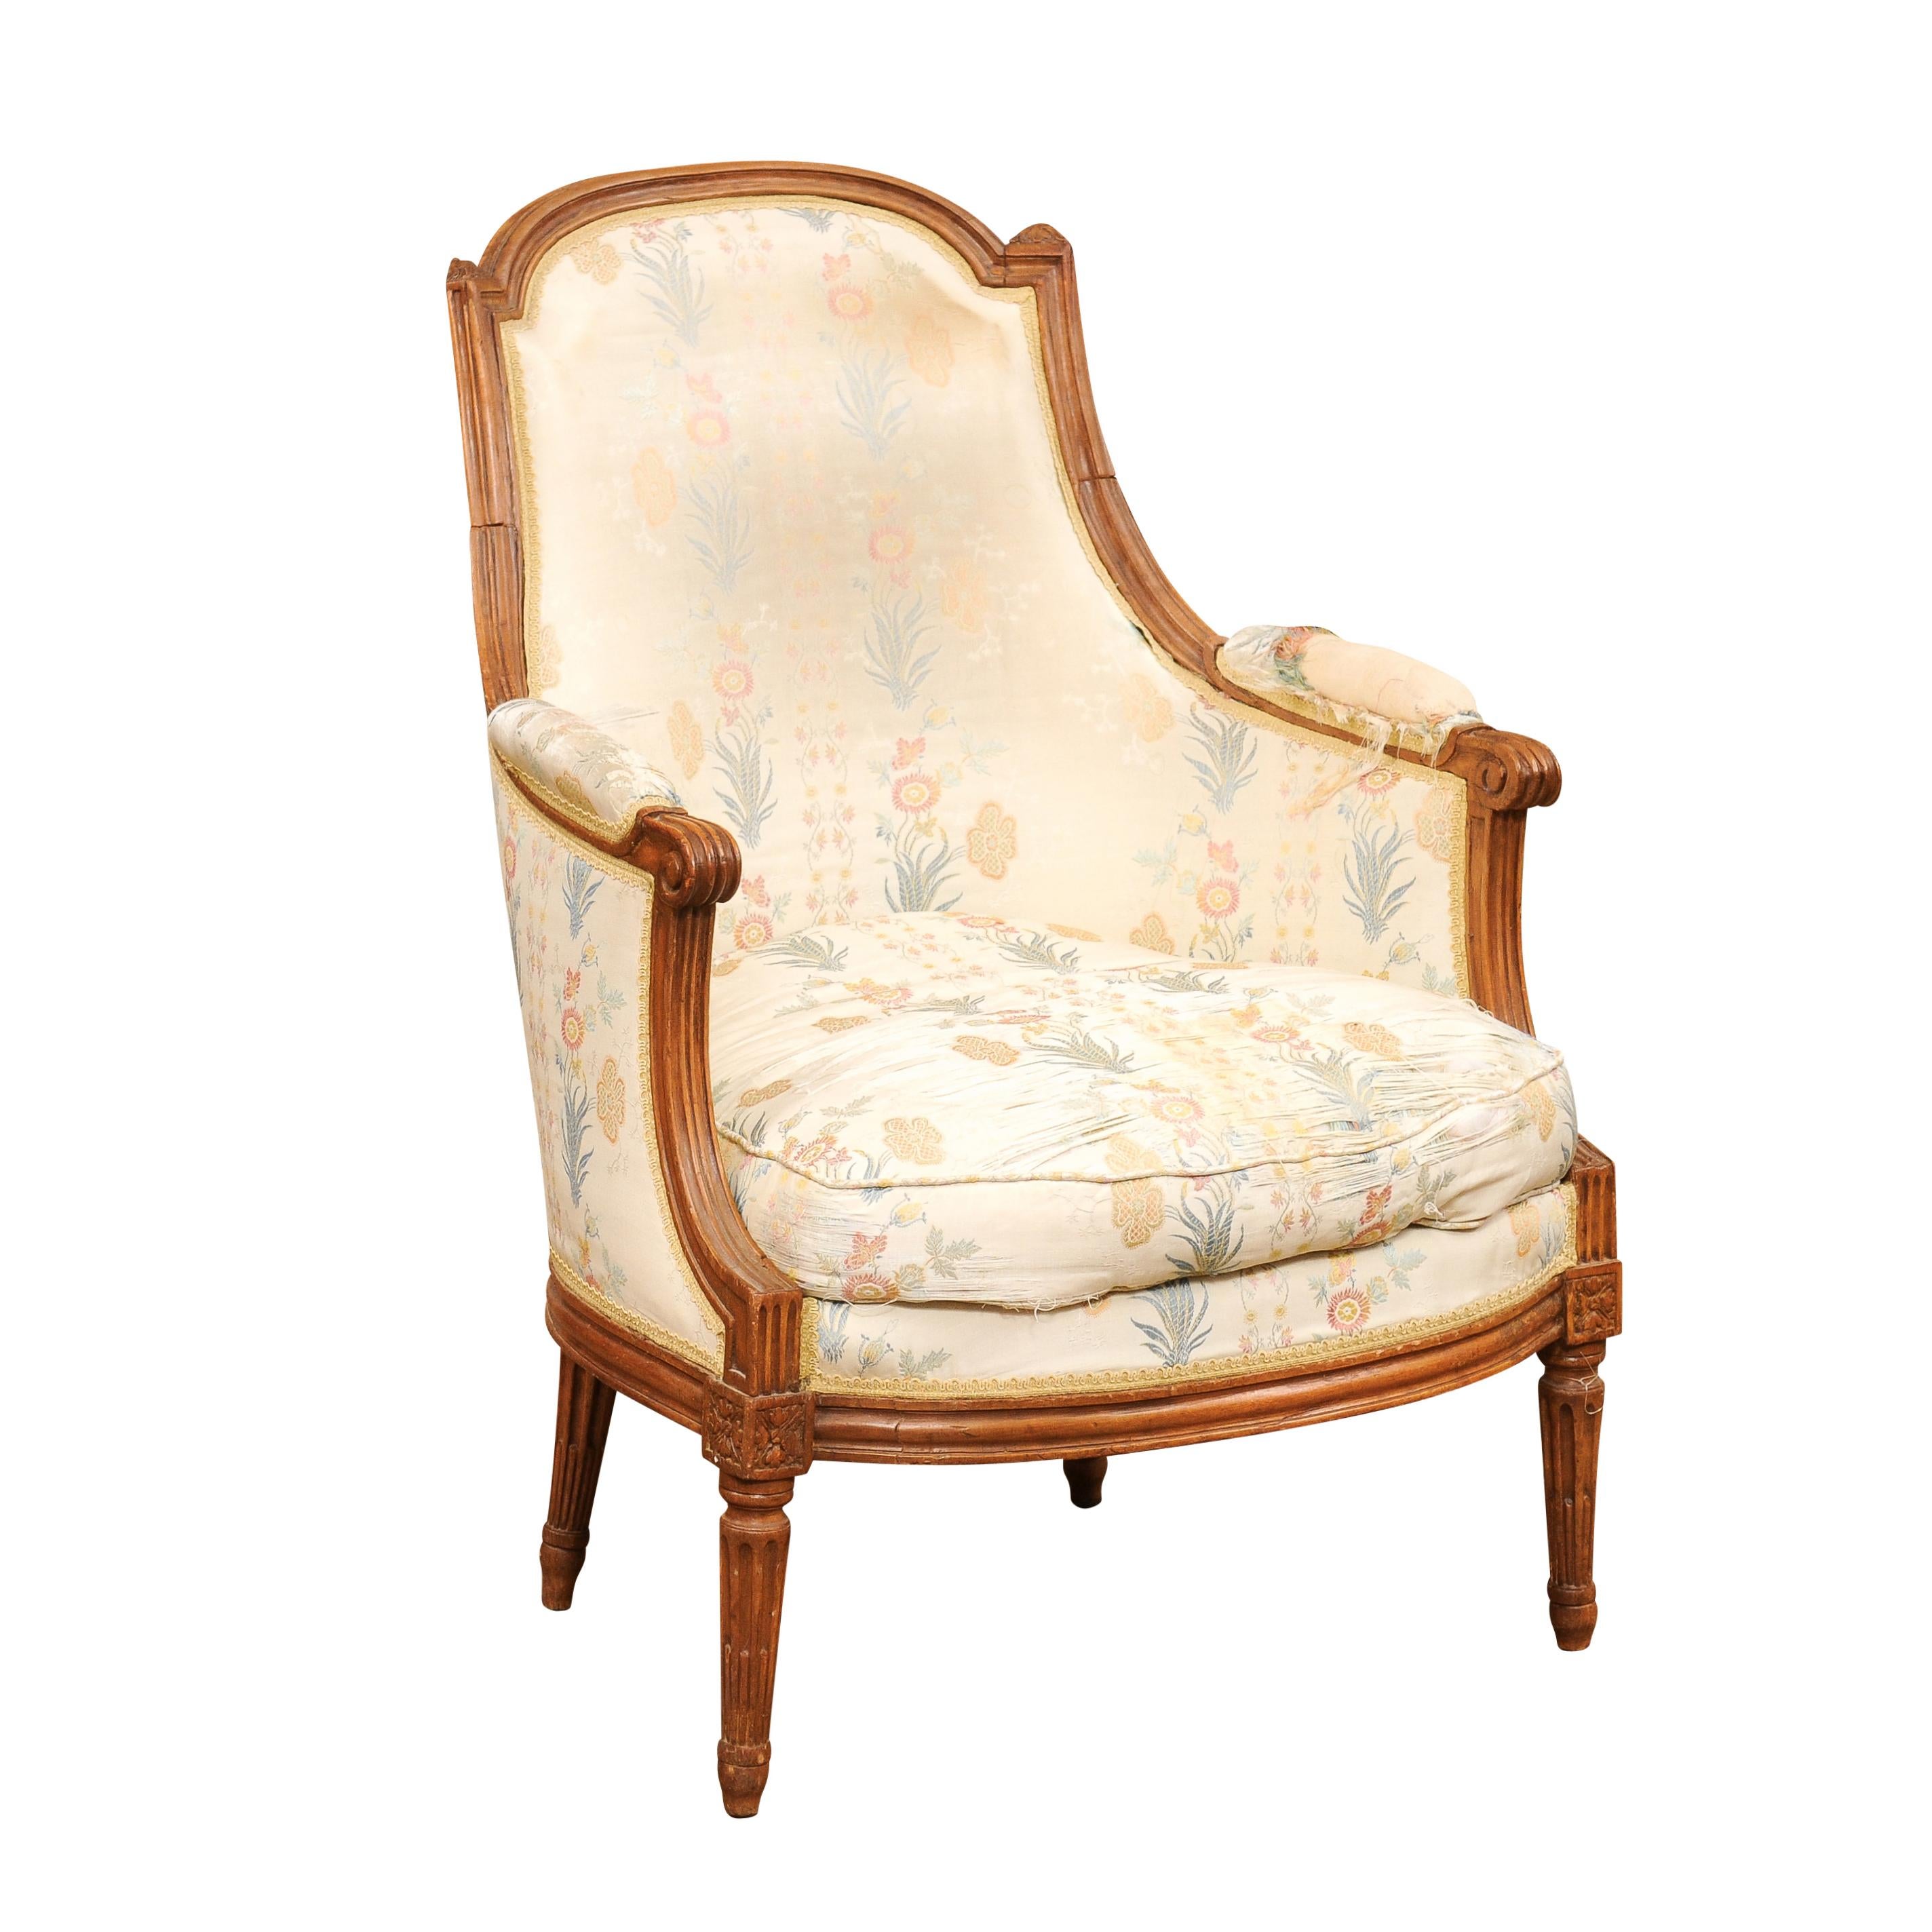 Ein französischer Bergère-Stuhl aus Nussbaum aus dem späten 18. Jahrhundert mit geschwungener Rückenlehne, geschwungenen Armlehnen, geschnitzten Rosetten und konisch zulaufenden Beinen. Erleben Sie die zeitlose Eleganz dieses französischen